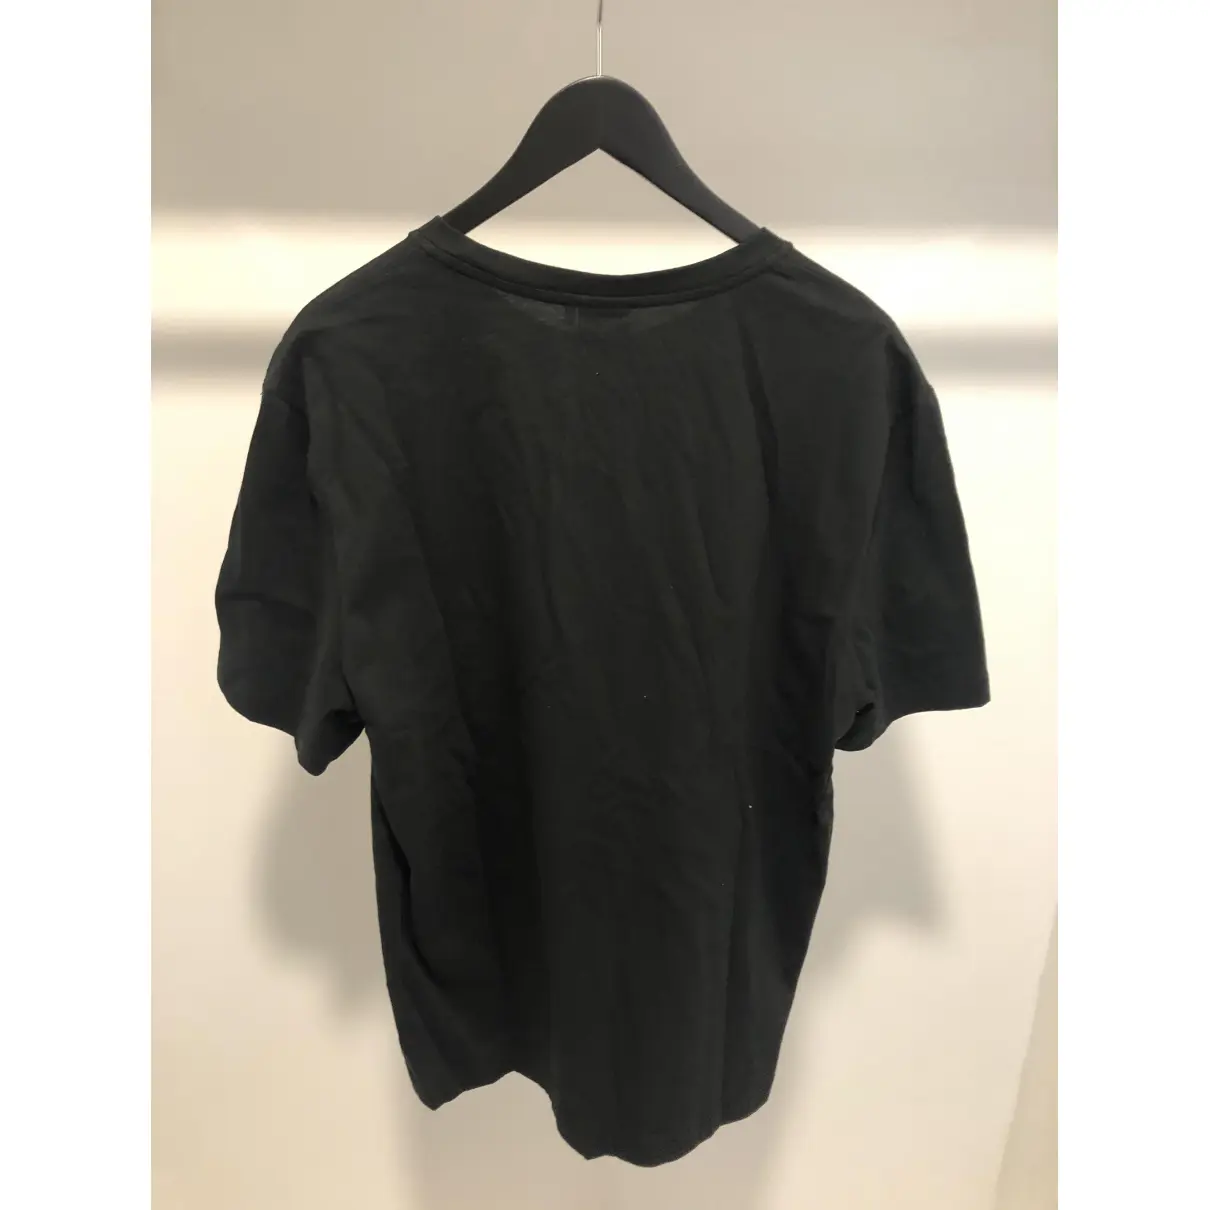 Buy Lacoste Live Black Cotton T-shirt online